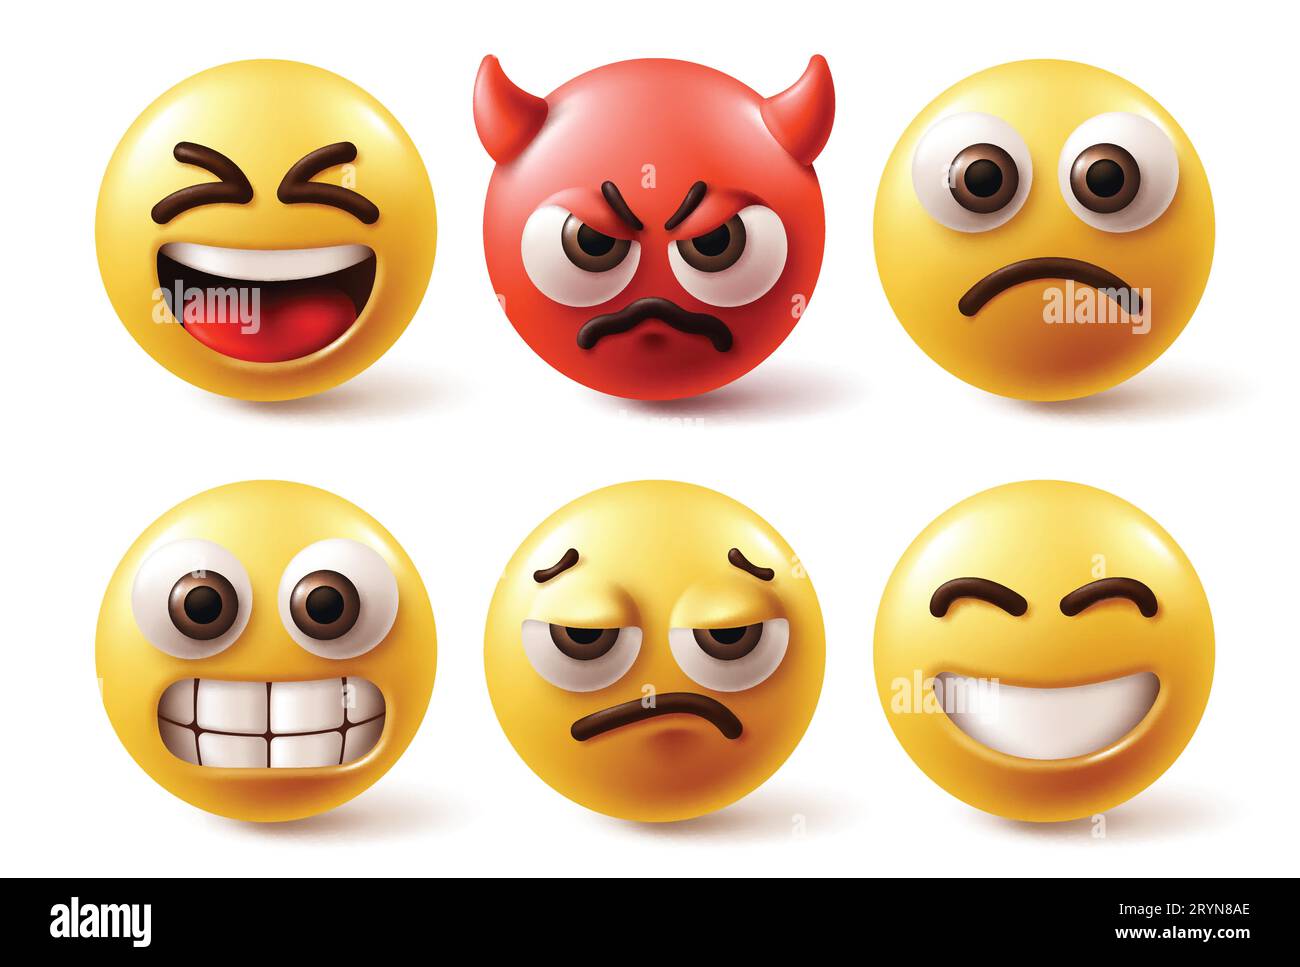 Jeu de vecteurs d'émoticônes emojis. Personnages emoji en couleur jaune et rouge avec heureux, diable fou, triste, humeur de visage en colère et émotions en fond blanc. Illustration de Vecteur